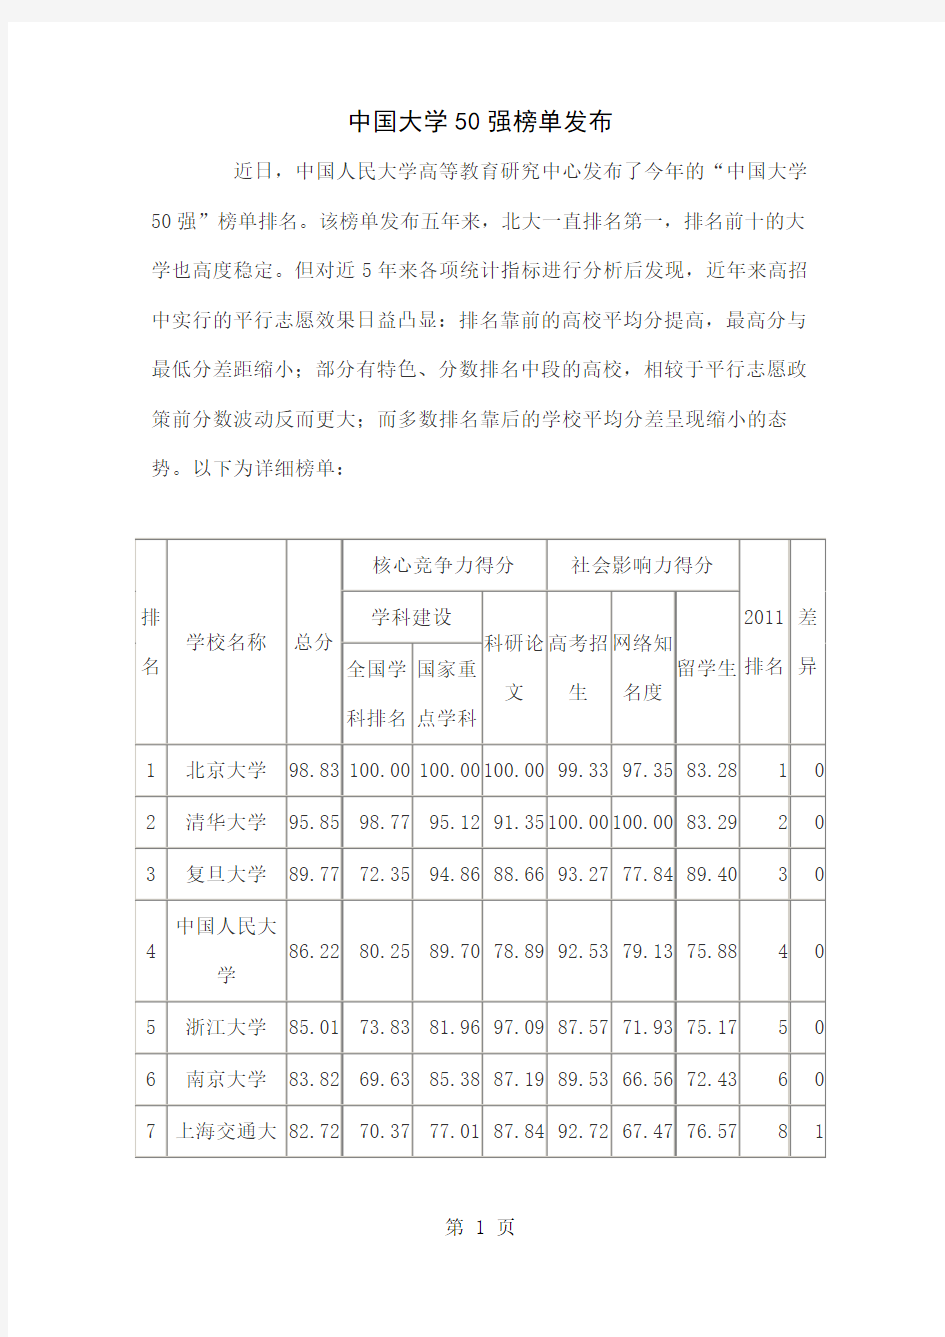 2019年中国大学50强榜单发布-12页word资料